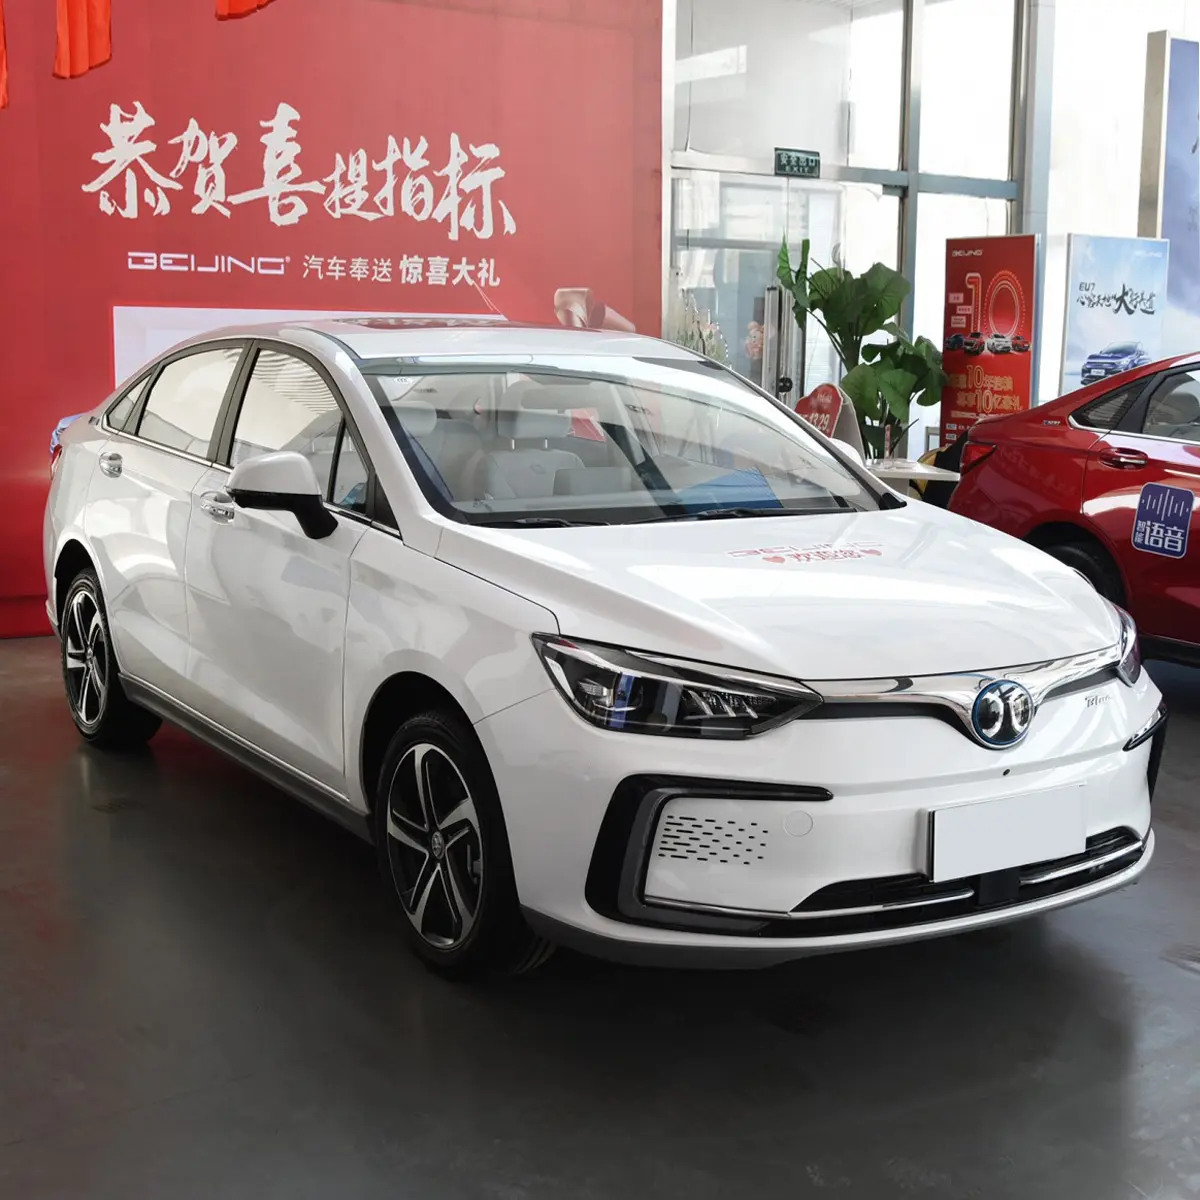 รถยนต์ไฟฟ้า Eu5ปักกิ่งรถยนต์ Eu5ใหม่รถยนต์พลังงานไฟฟ้ารถยนต์มือสองจากจีน